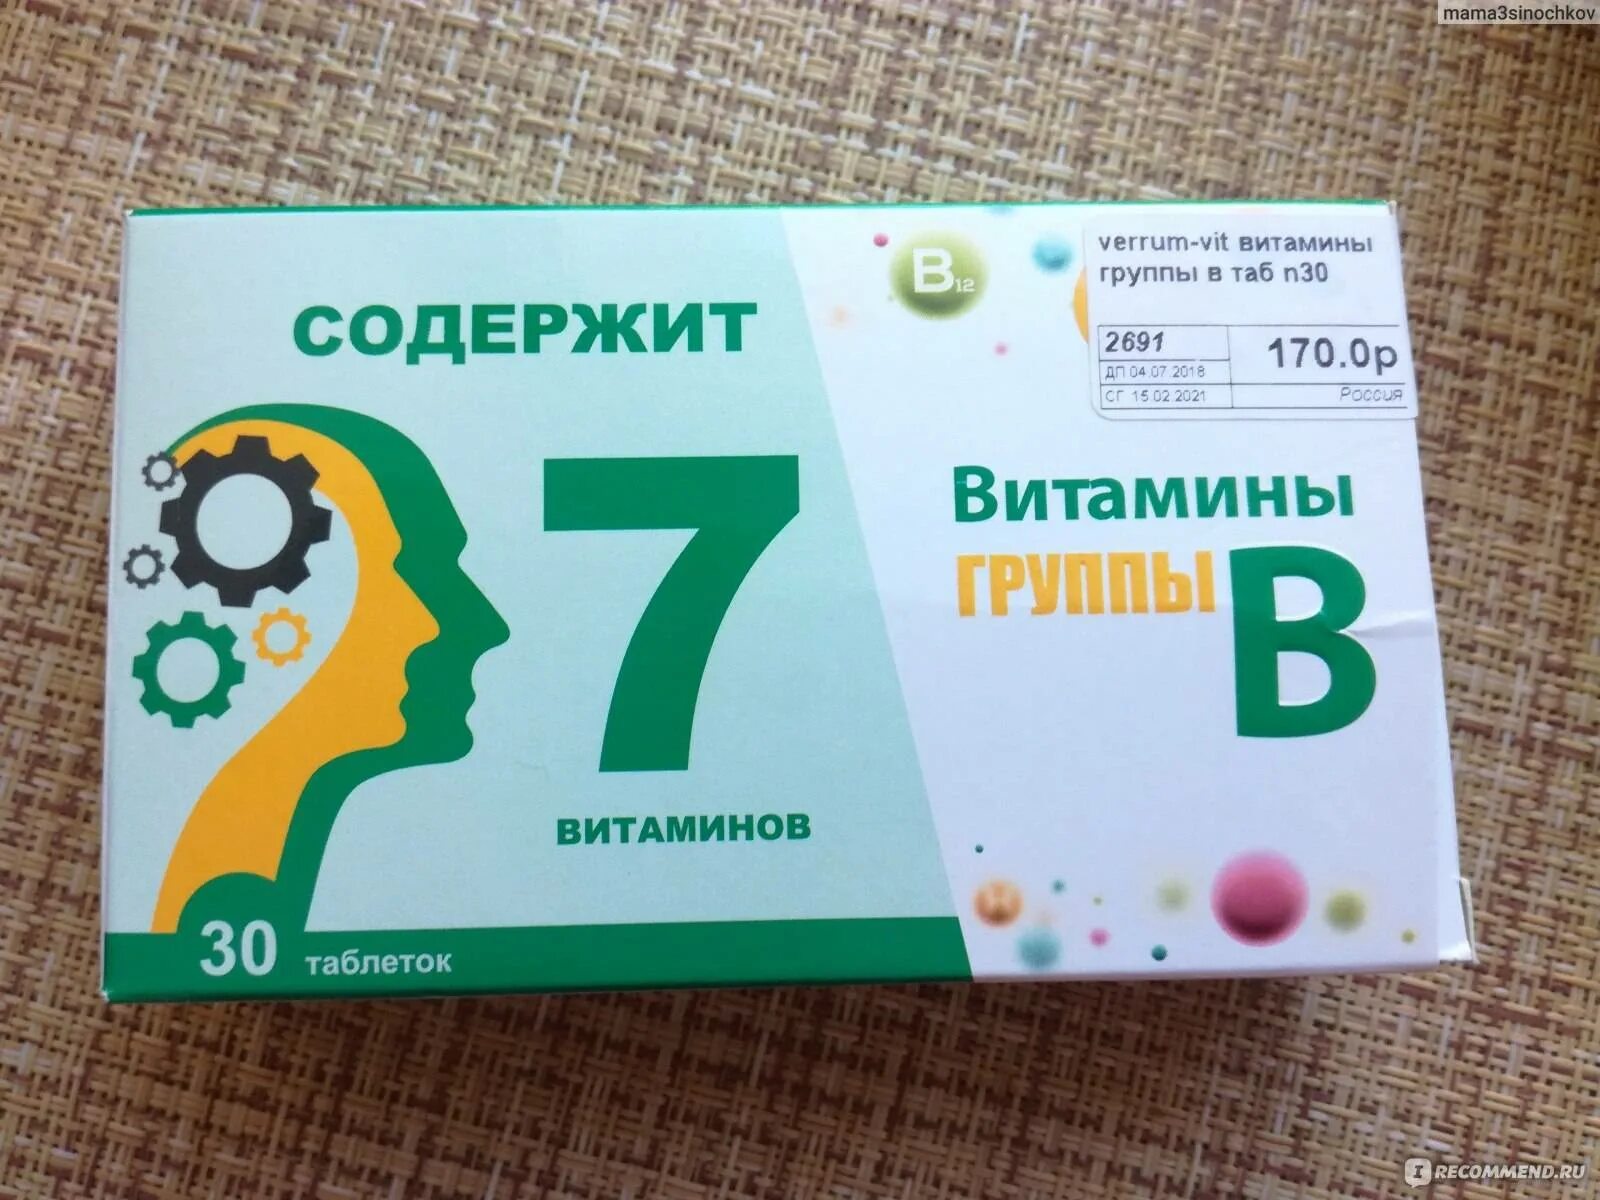 Купить витамины беларусь. Витаминный комплекс в12 в6. Комплекс витаминов в2 в6 в12. Витаминный комплекс в6 в9 в12. Витамины б1 б6 б12 в таблетках.